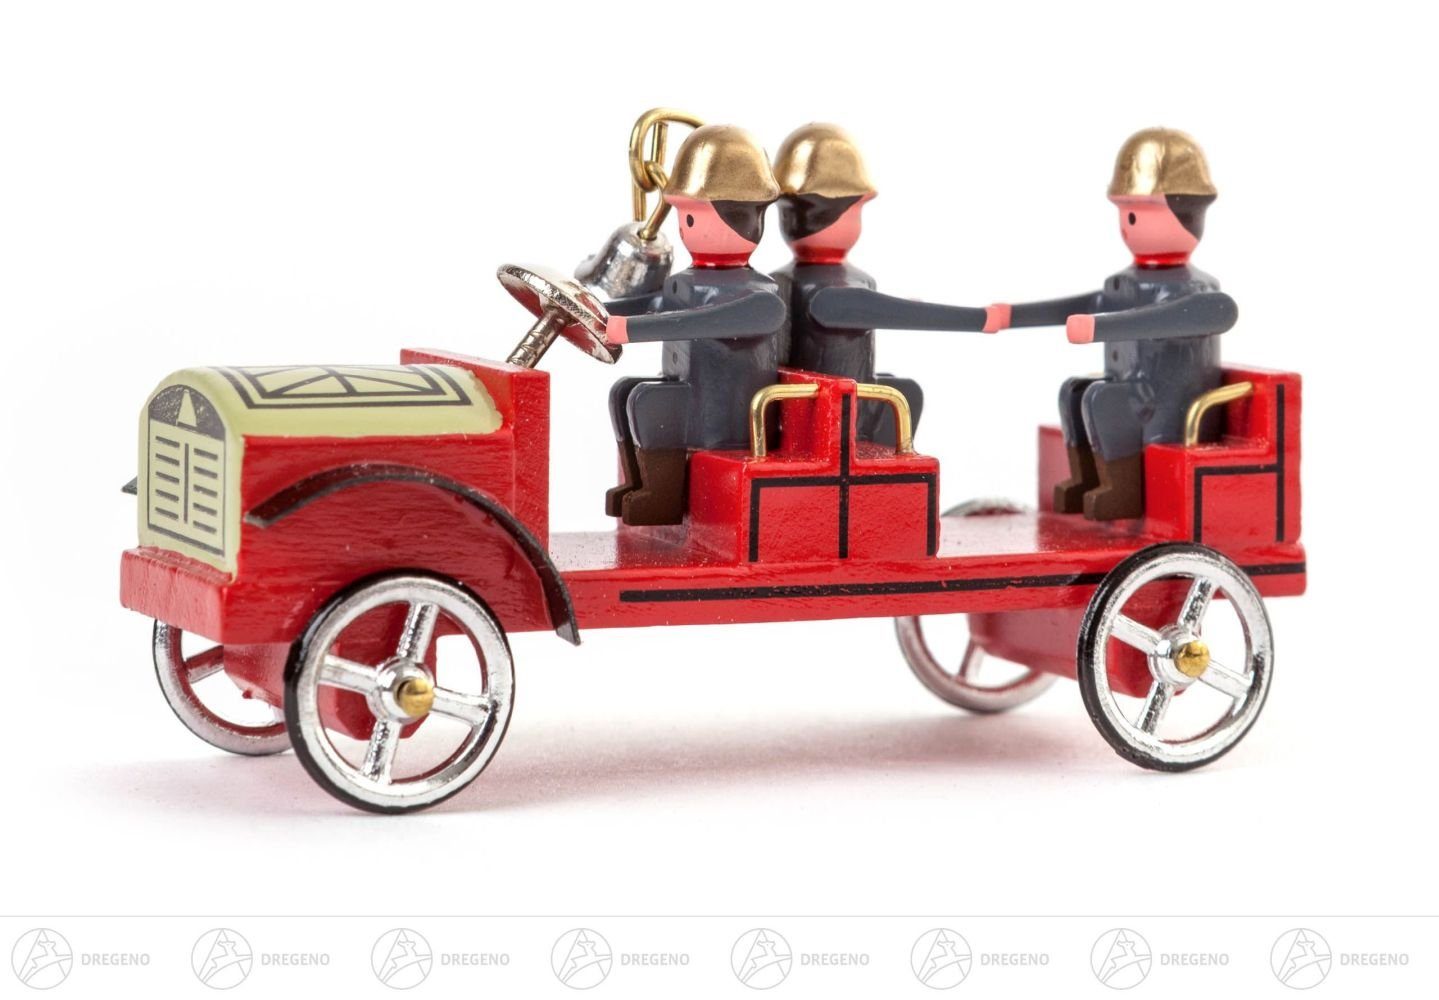 Dregeno Erzgebirge Weihnachtsfigur Miniatur Kleiner Mannschaftswagen Höhe ca 3,5 cm NEU, Metallräder